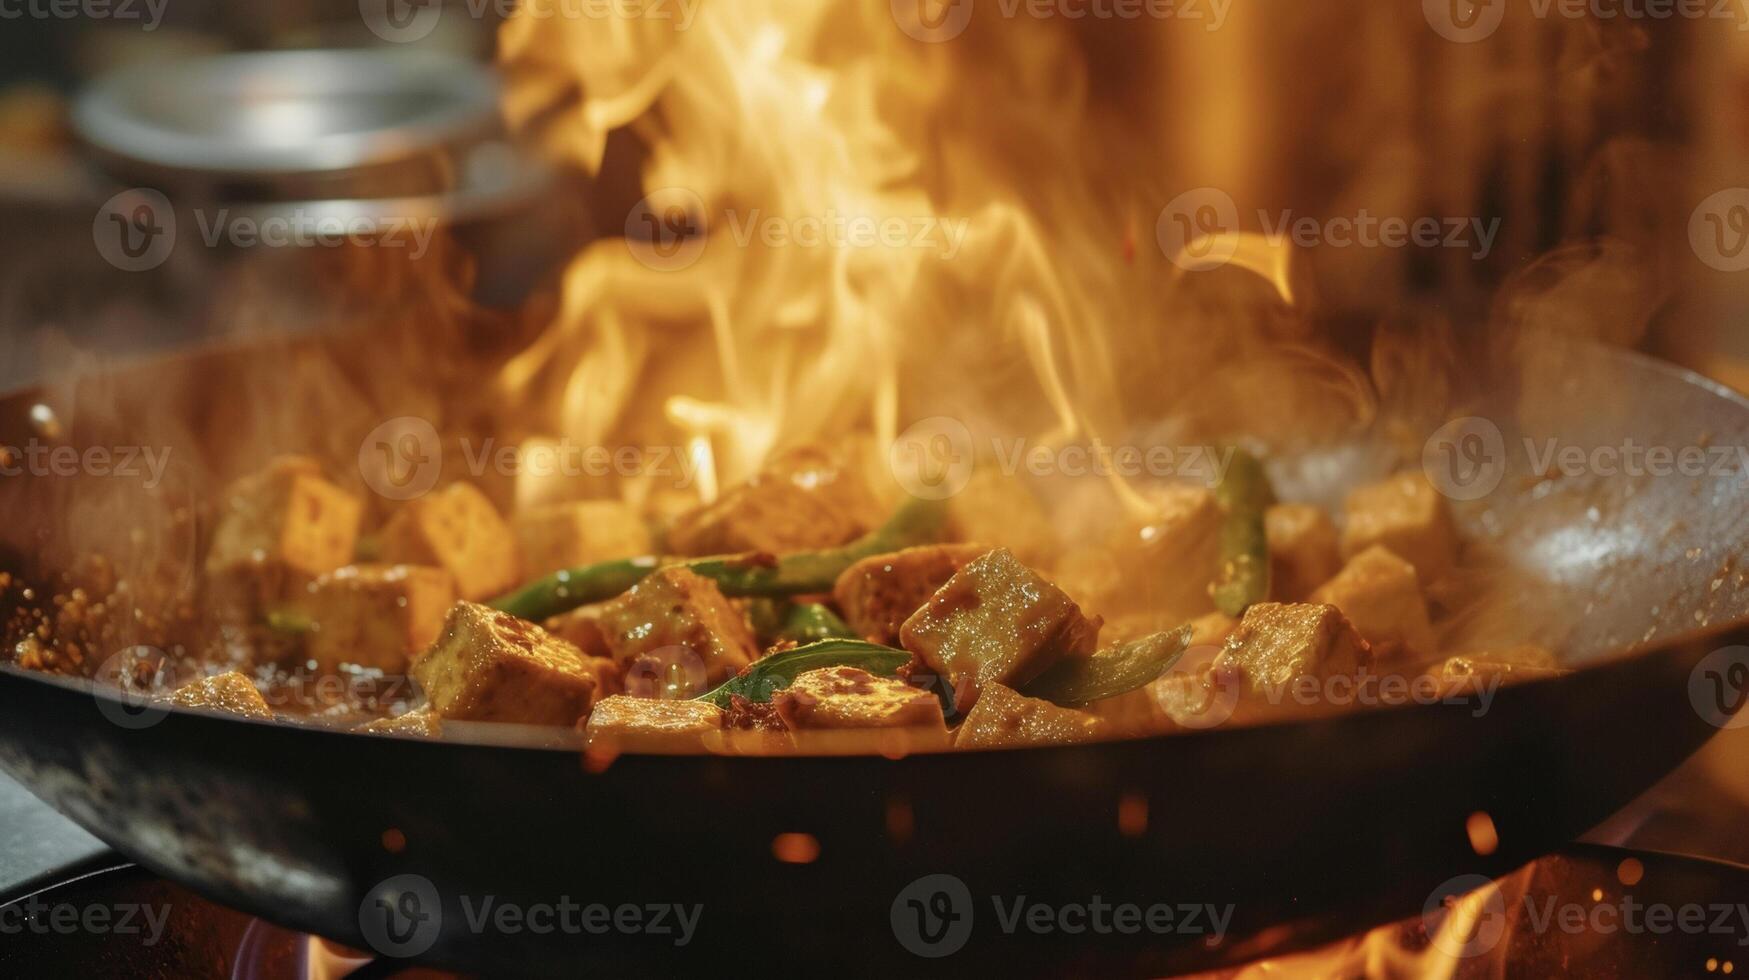 le du son de crépitement pétrole et le odeur de y assaisonnements remplir le cuisine comme le grésillant Tofu sauté danses dans flammes donnant de une délicieux chaleur photo